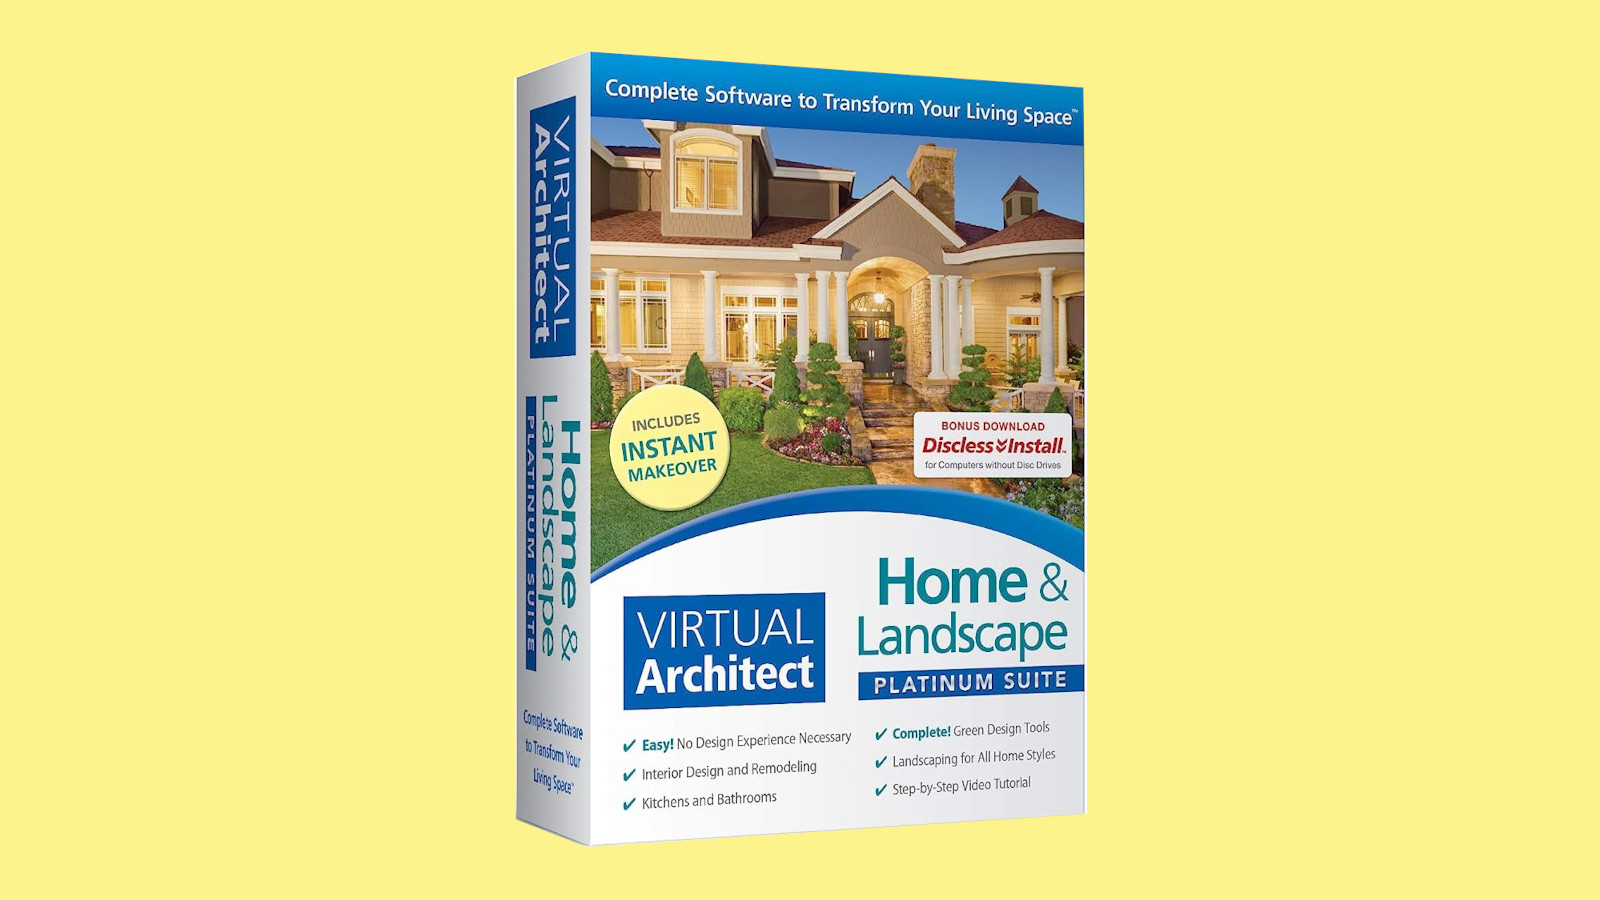 Virtual Architect Home & Landscape Platinum Suite CD Key [USD 103.45]